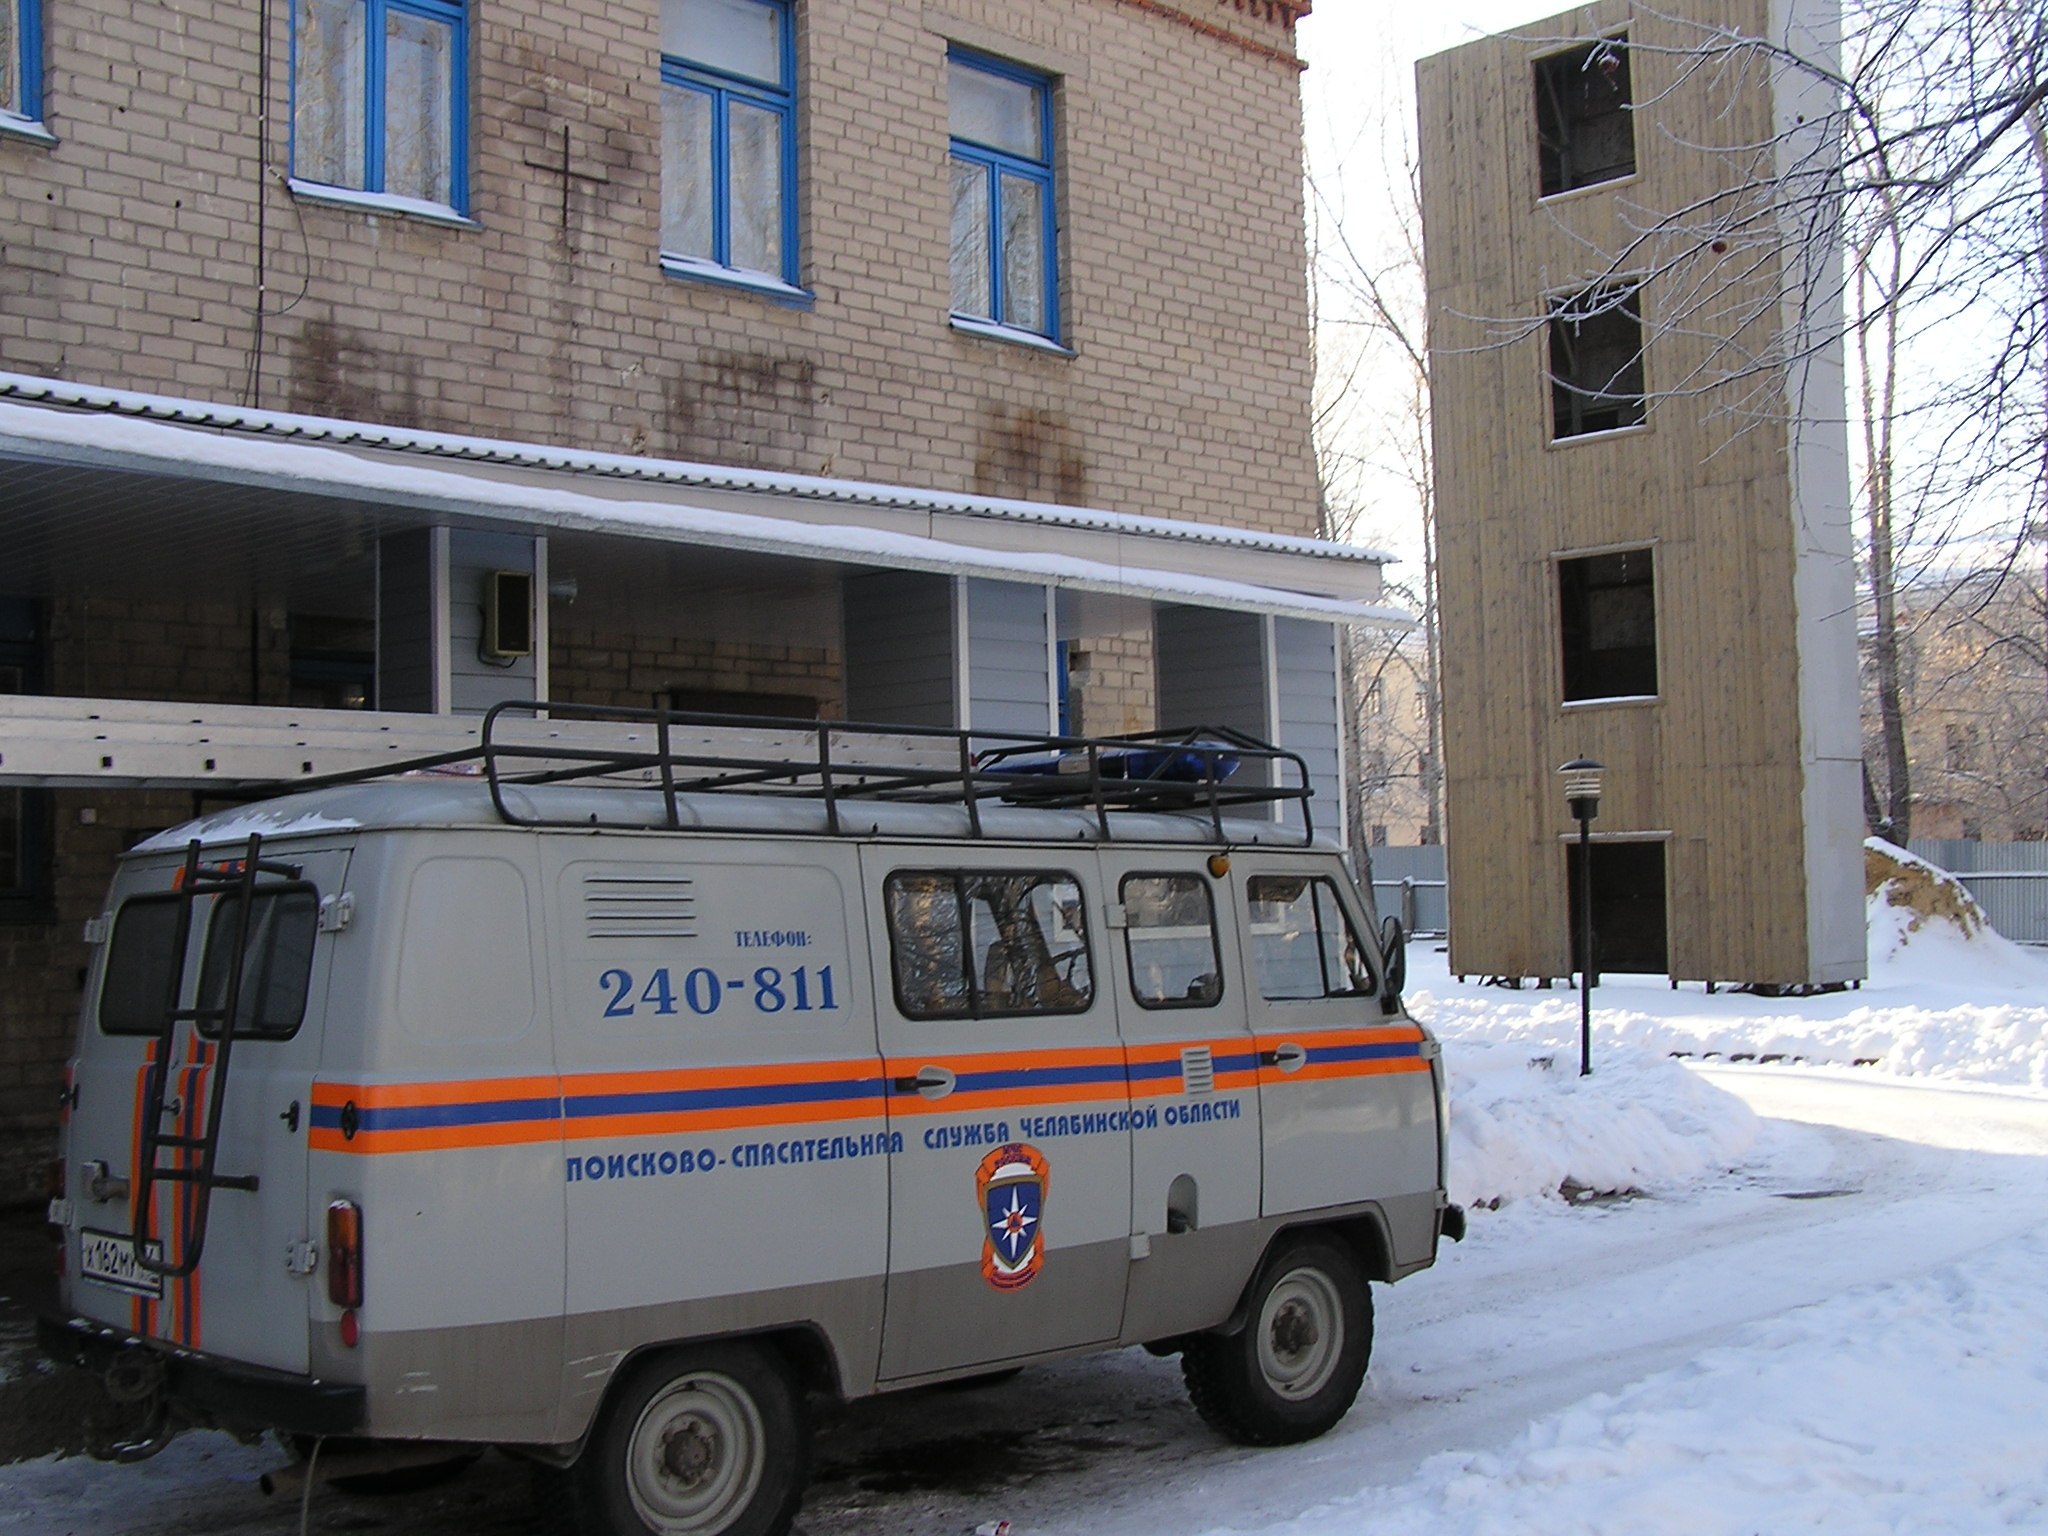 Как сообщили агентству «Урал-пресс-информ» в отделе по связям с общественностью Челябинской город